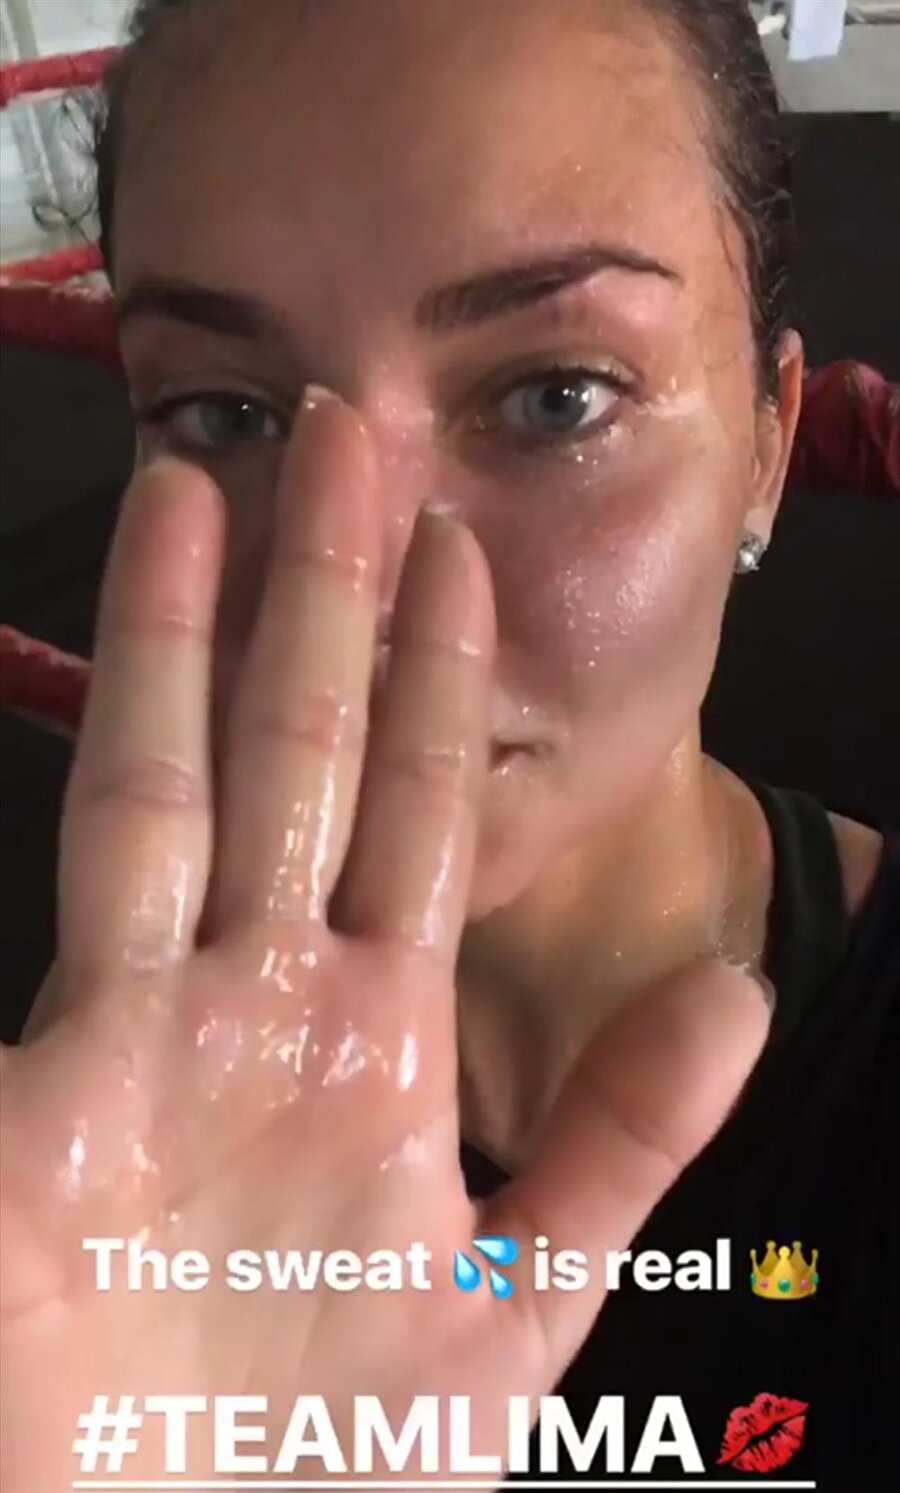 Formunu korumak için boks yapan Lima, spordan sonra yüzündeki teri silerek takipçilerine gösterdi ve bu halini Instagram hikayesinde paylaşırken ‘‘The sweat is real.(Gerçek ter)’’ notunu düştü.